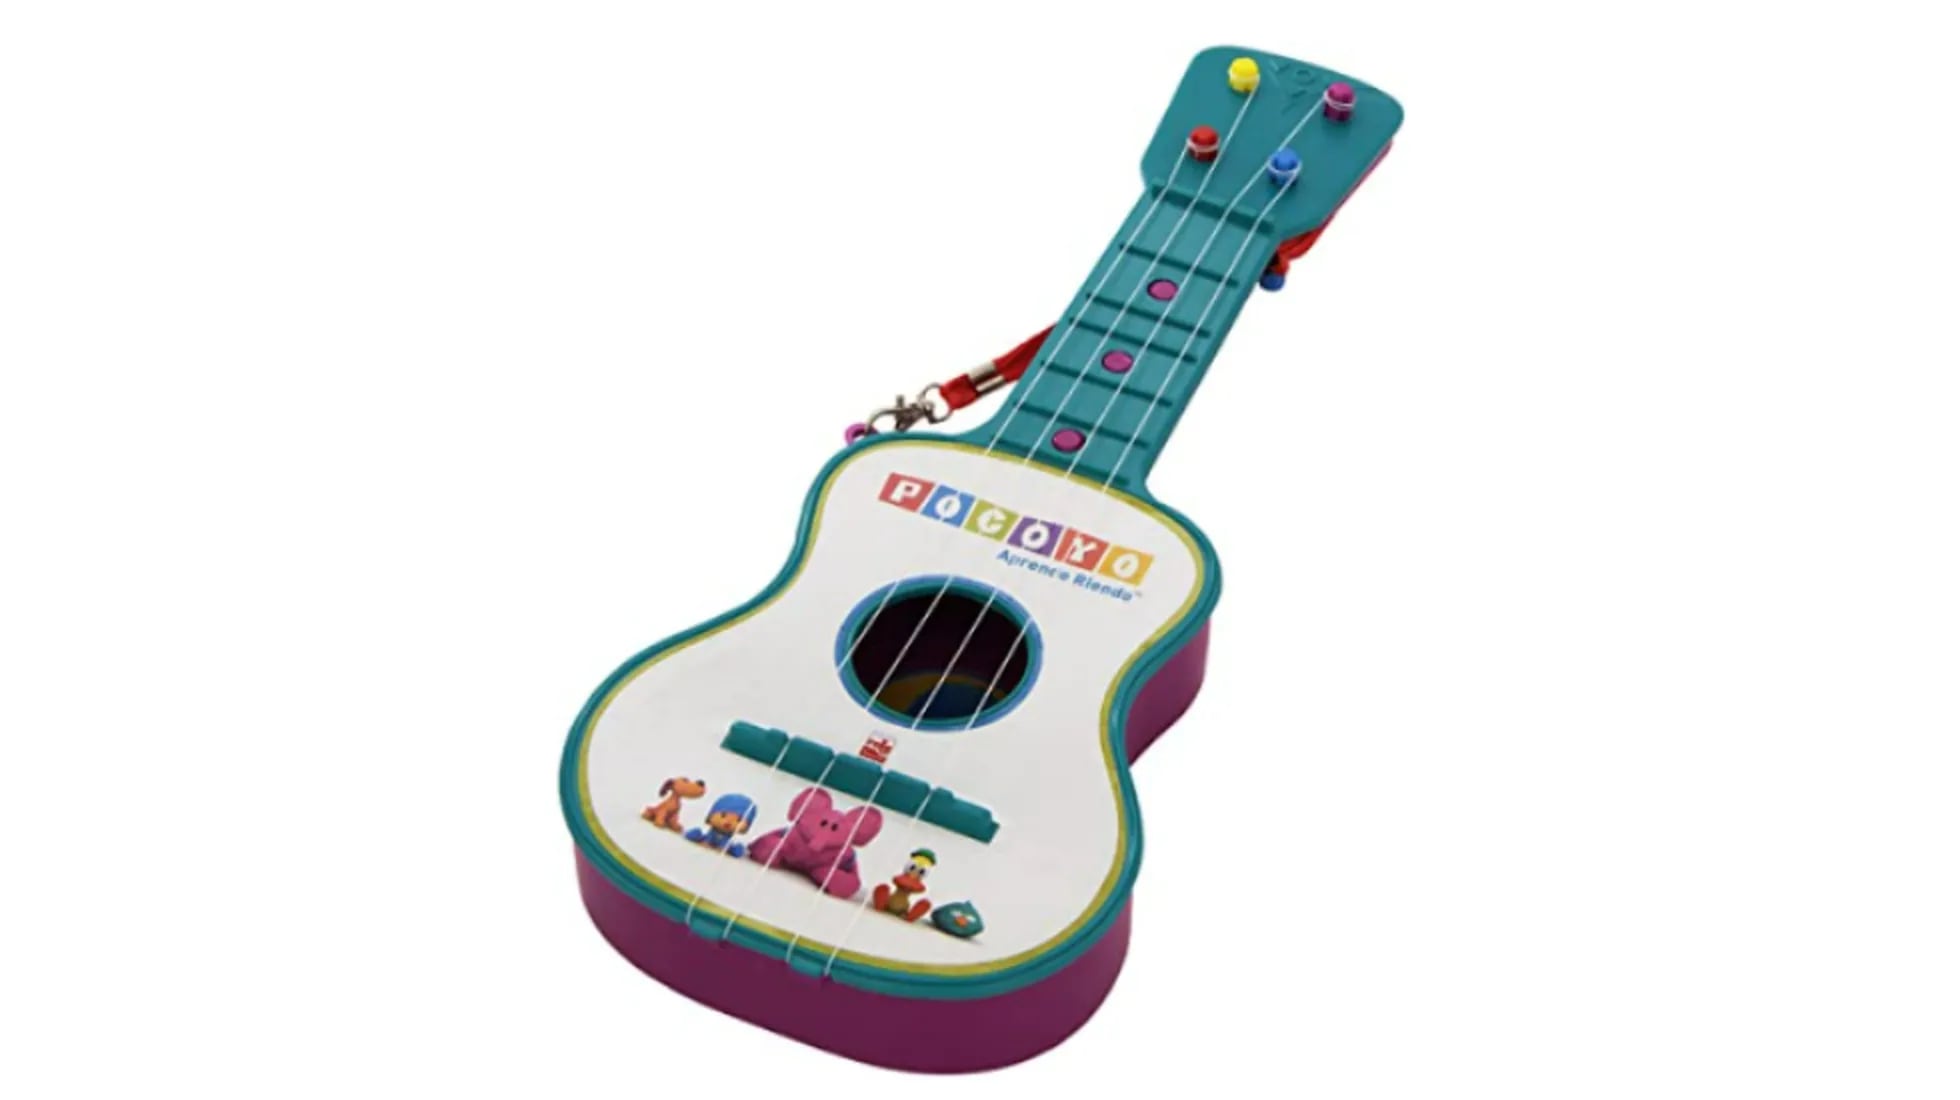 Malawi Aliado tornillo Las mejores guitarras infantiles | Escaparate | EL PAÍS